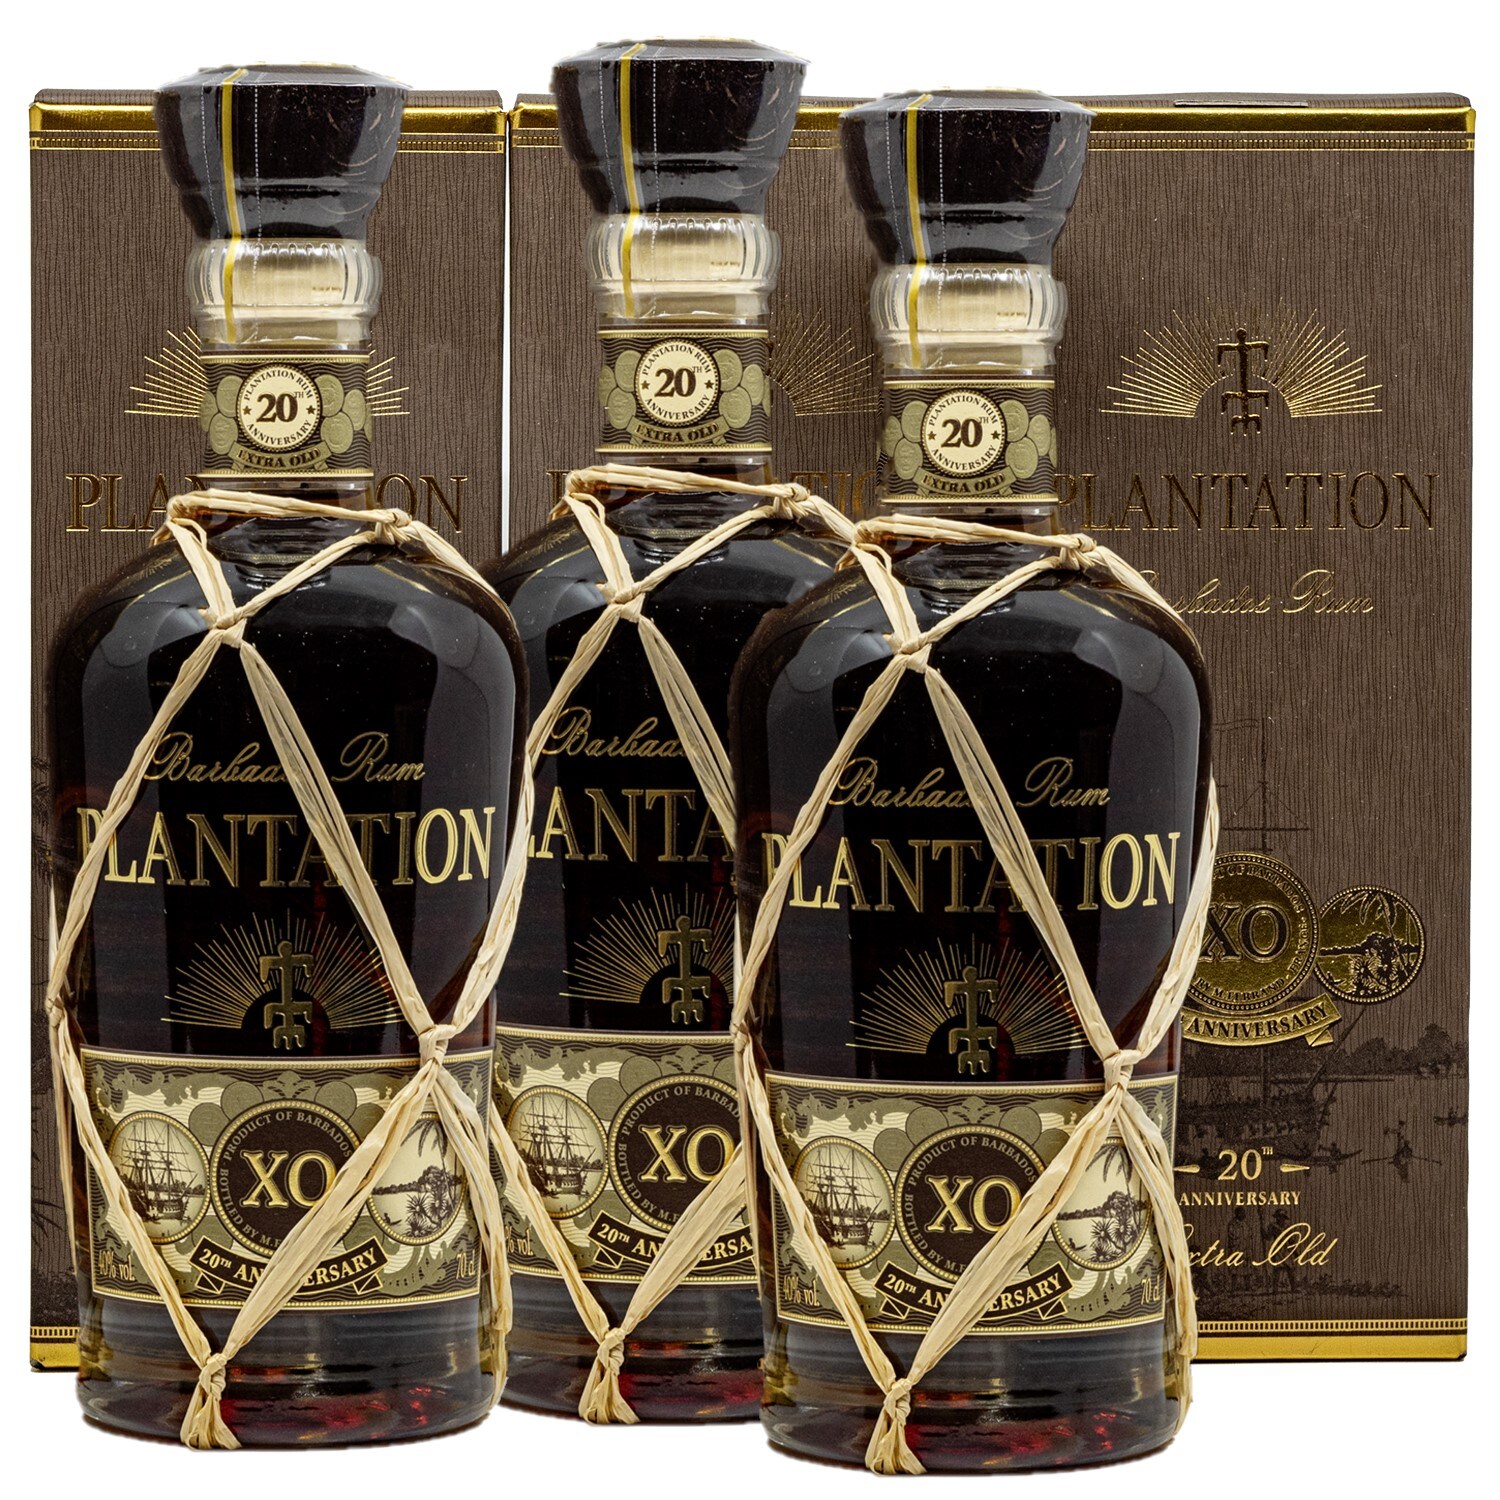 Plantation Barbados Rum Extra Old 20th Anniversary 3x700ml Bei Rewe Online Bestellen